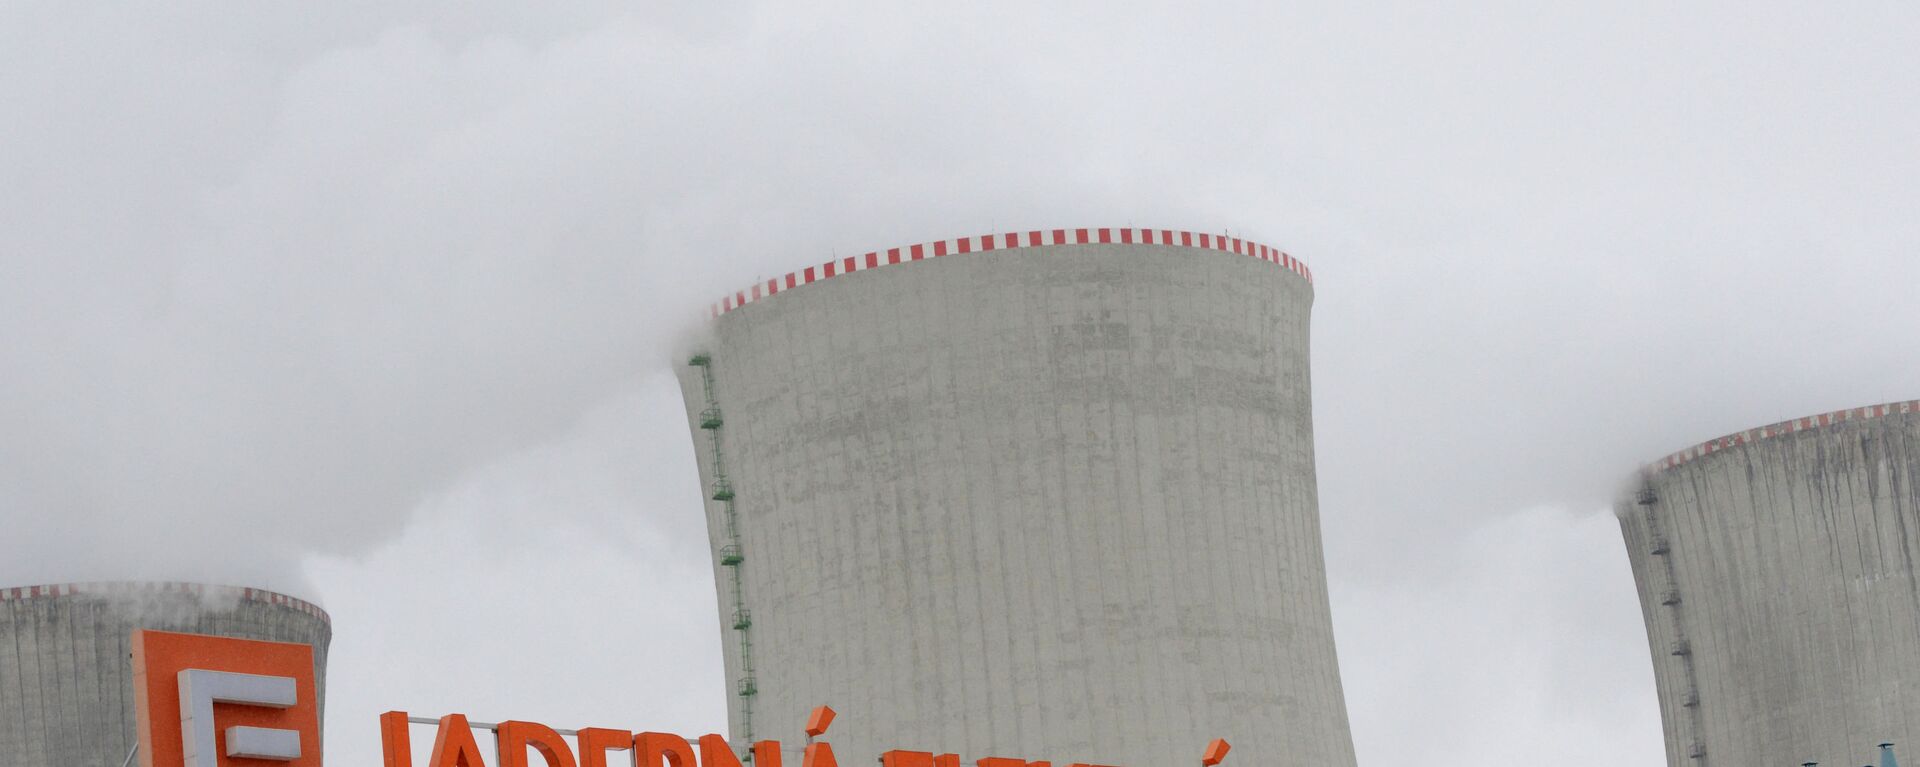 Градирни АЭС Дукованы во время учений по ядерной аварии 26 марта 2013 года в 50 км от города Брно. AFP PHOTO / МИХАЛ ЧИЗЕК - Sputnik Абхазия, 1920, 04.04.2021